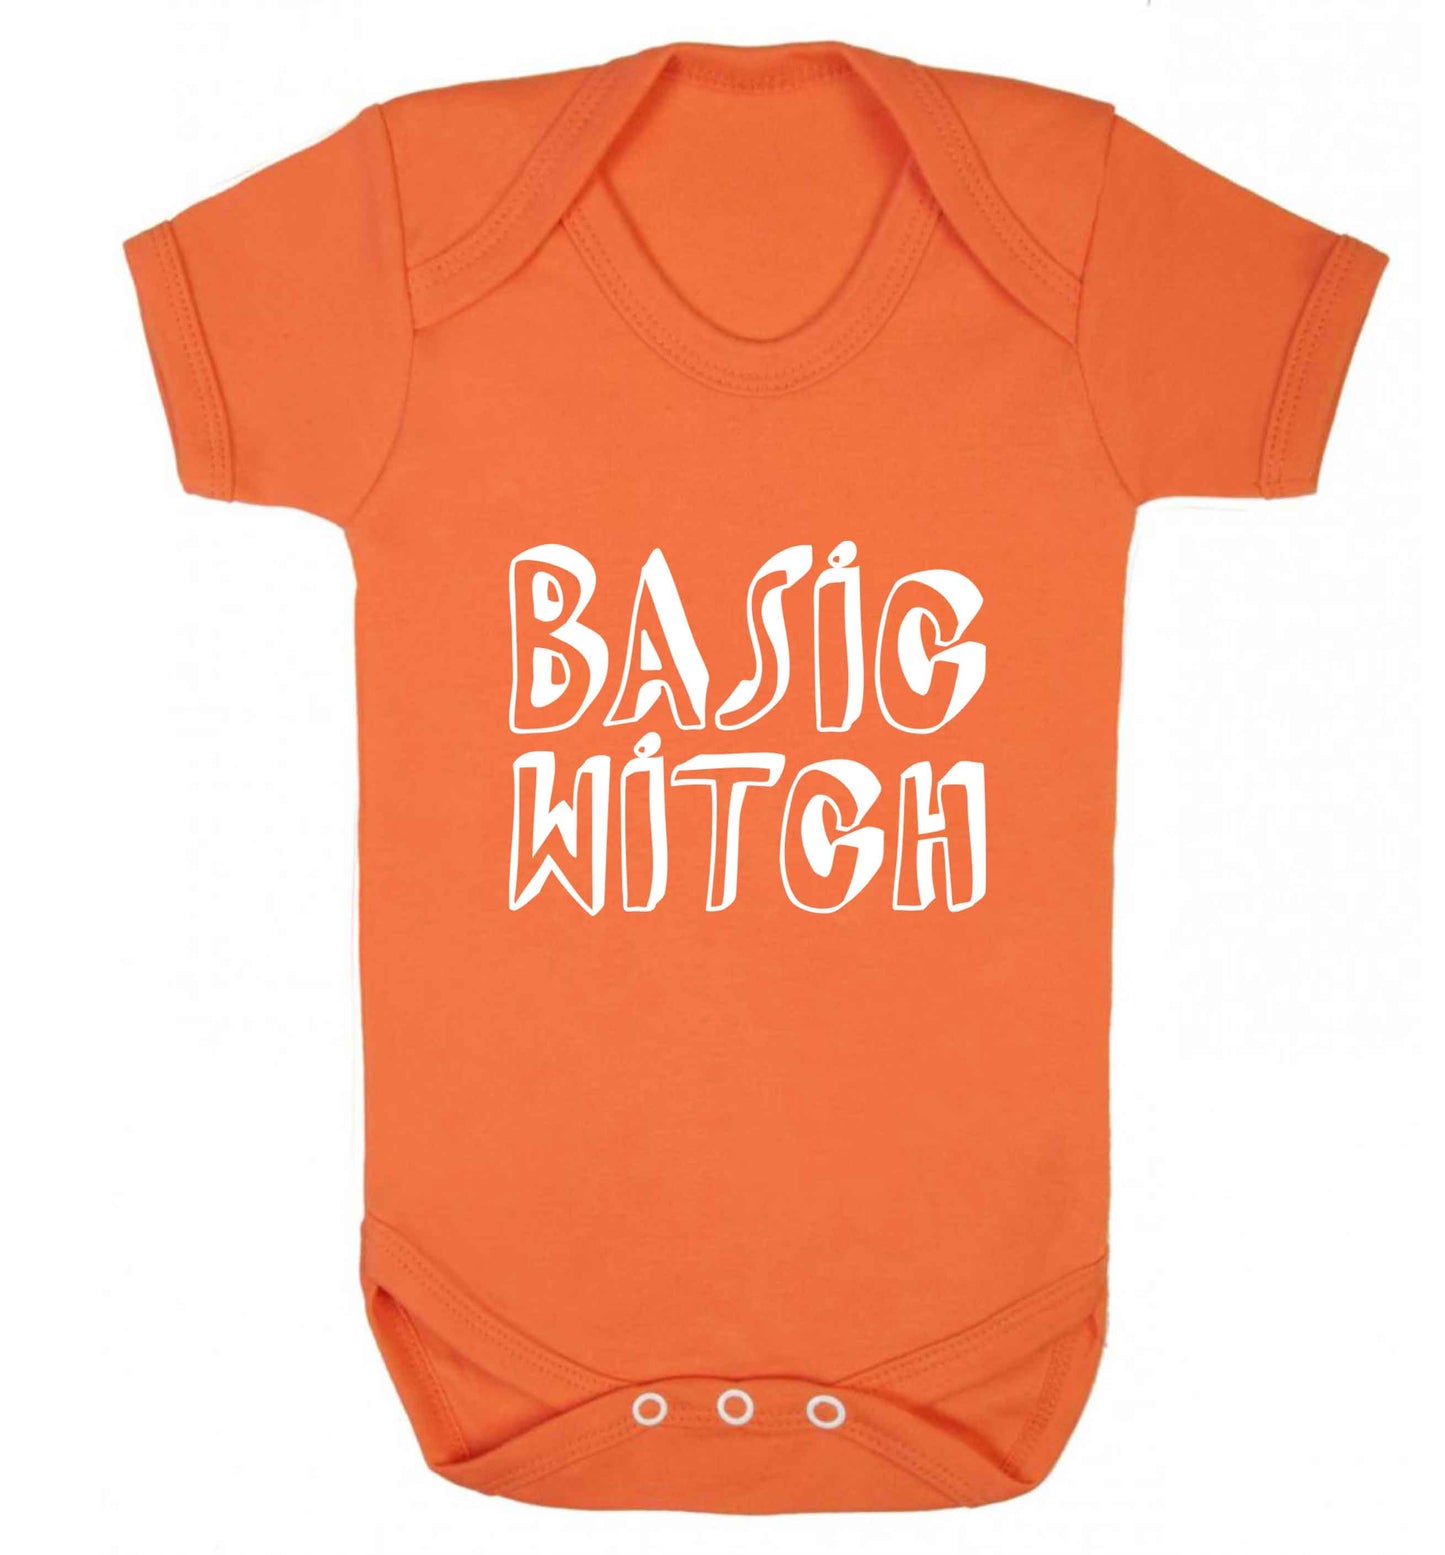 Basic witch baby vest orange 18-24 months